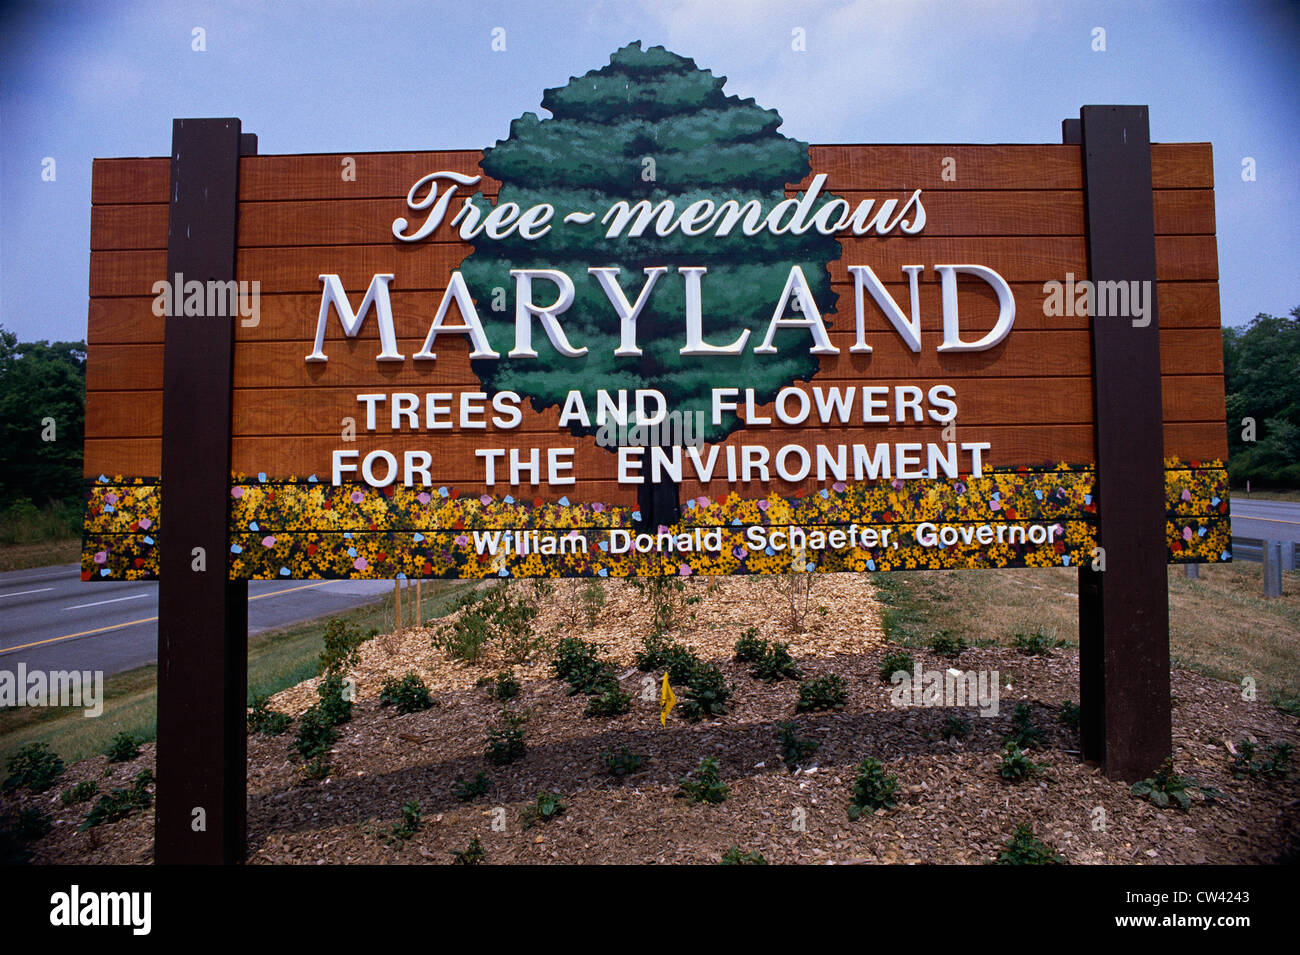 Questo è un cartello stradale che dice che albero-mendous Maryland, alberi e fiori per l'ambiente. È il benvenuto in Maryland segno. Foto Stock